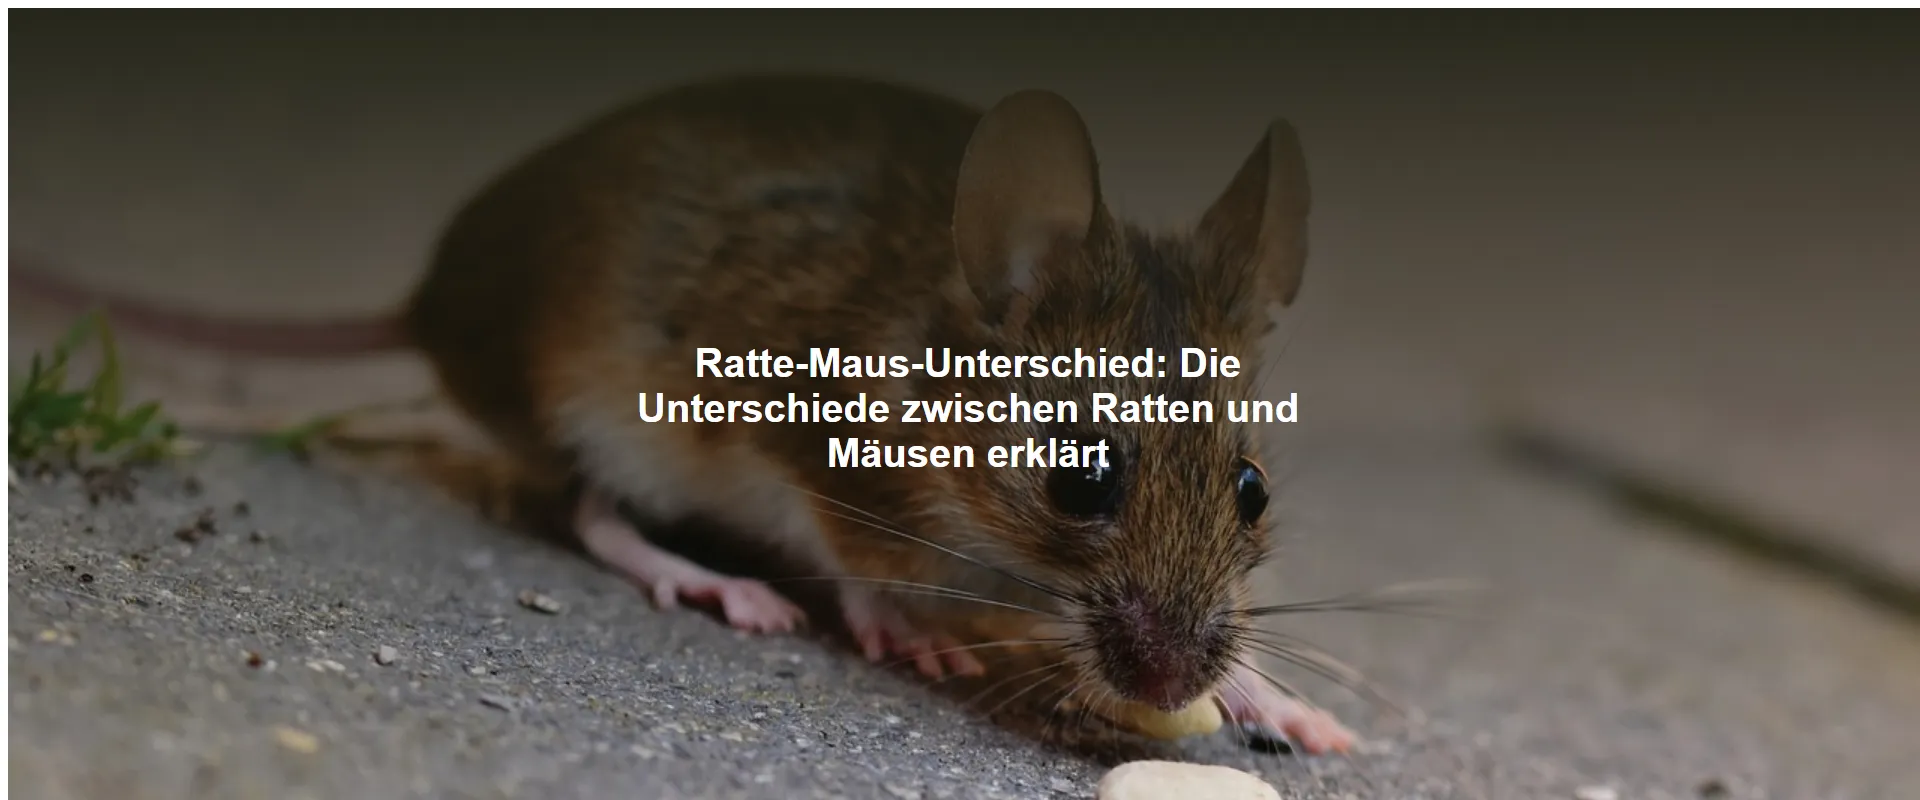 Ratte-Maus-Unterschied – Die Unterschiede zwischen Ratten und Mäusen erklärt